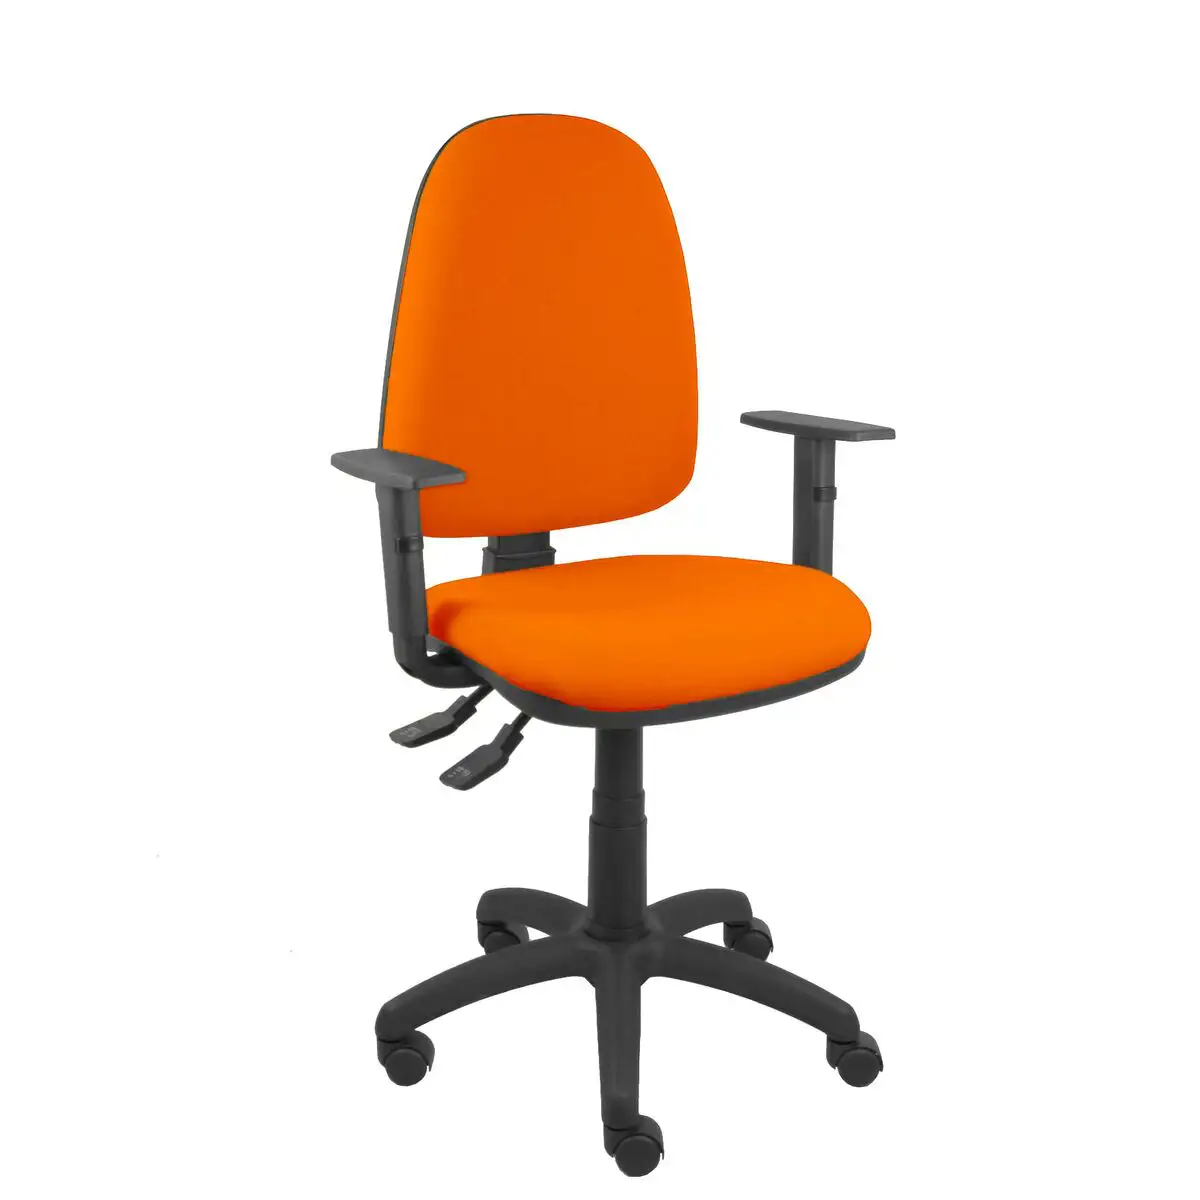 Chaise de bureau ayna s p c 5b10crn orange fonce_8320. DIAYTAR SENEGAL - L'Art de Choisir, l'Art de Vivre. Parcourez notre boutique en ligne et choisissez parmi des produits de qualité qui ajoutent de l'élégance à votre quotidien.